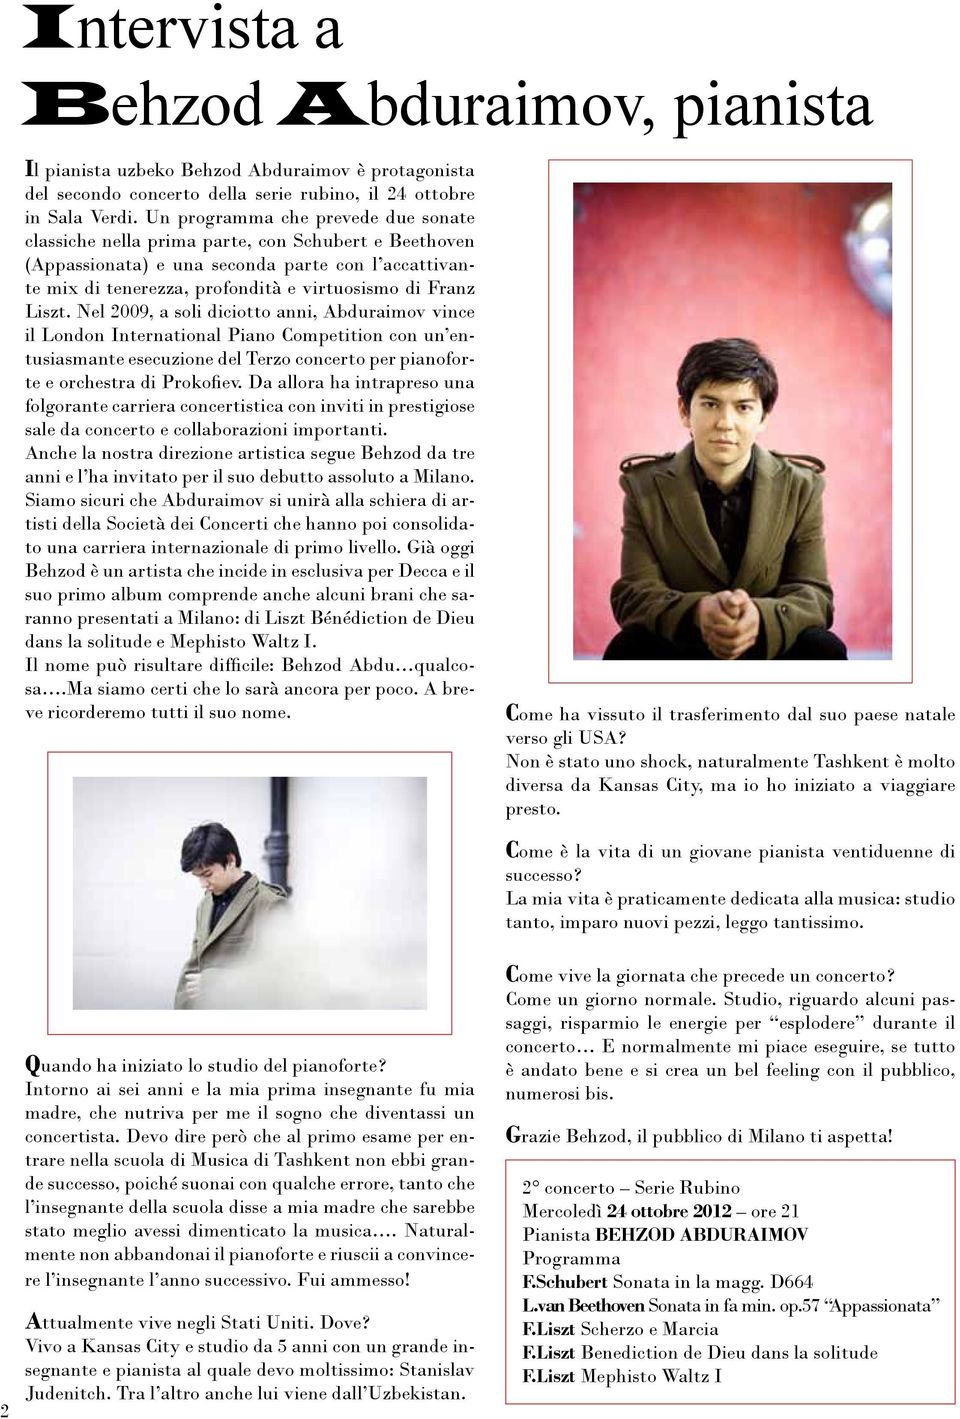 Liszt. Nel 2009, a soli diciotto anni, Abduraimov vince il London International Piano Competition con un entusiasmante esecuzione del Terzo concerto per pianoforte e orchestra di Prokofiev.